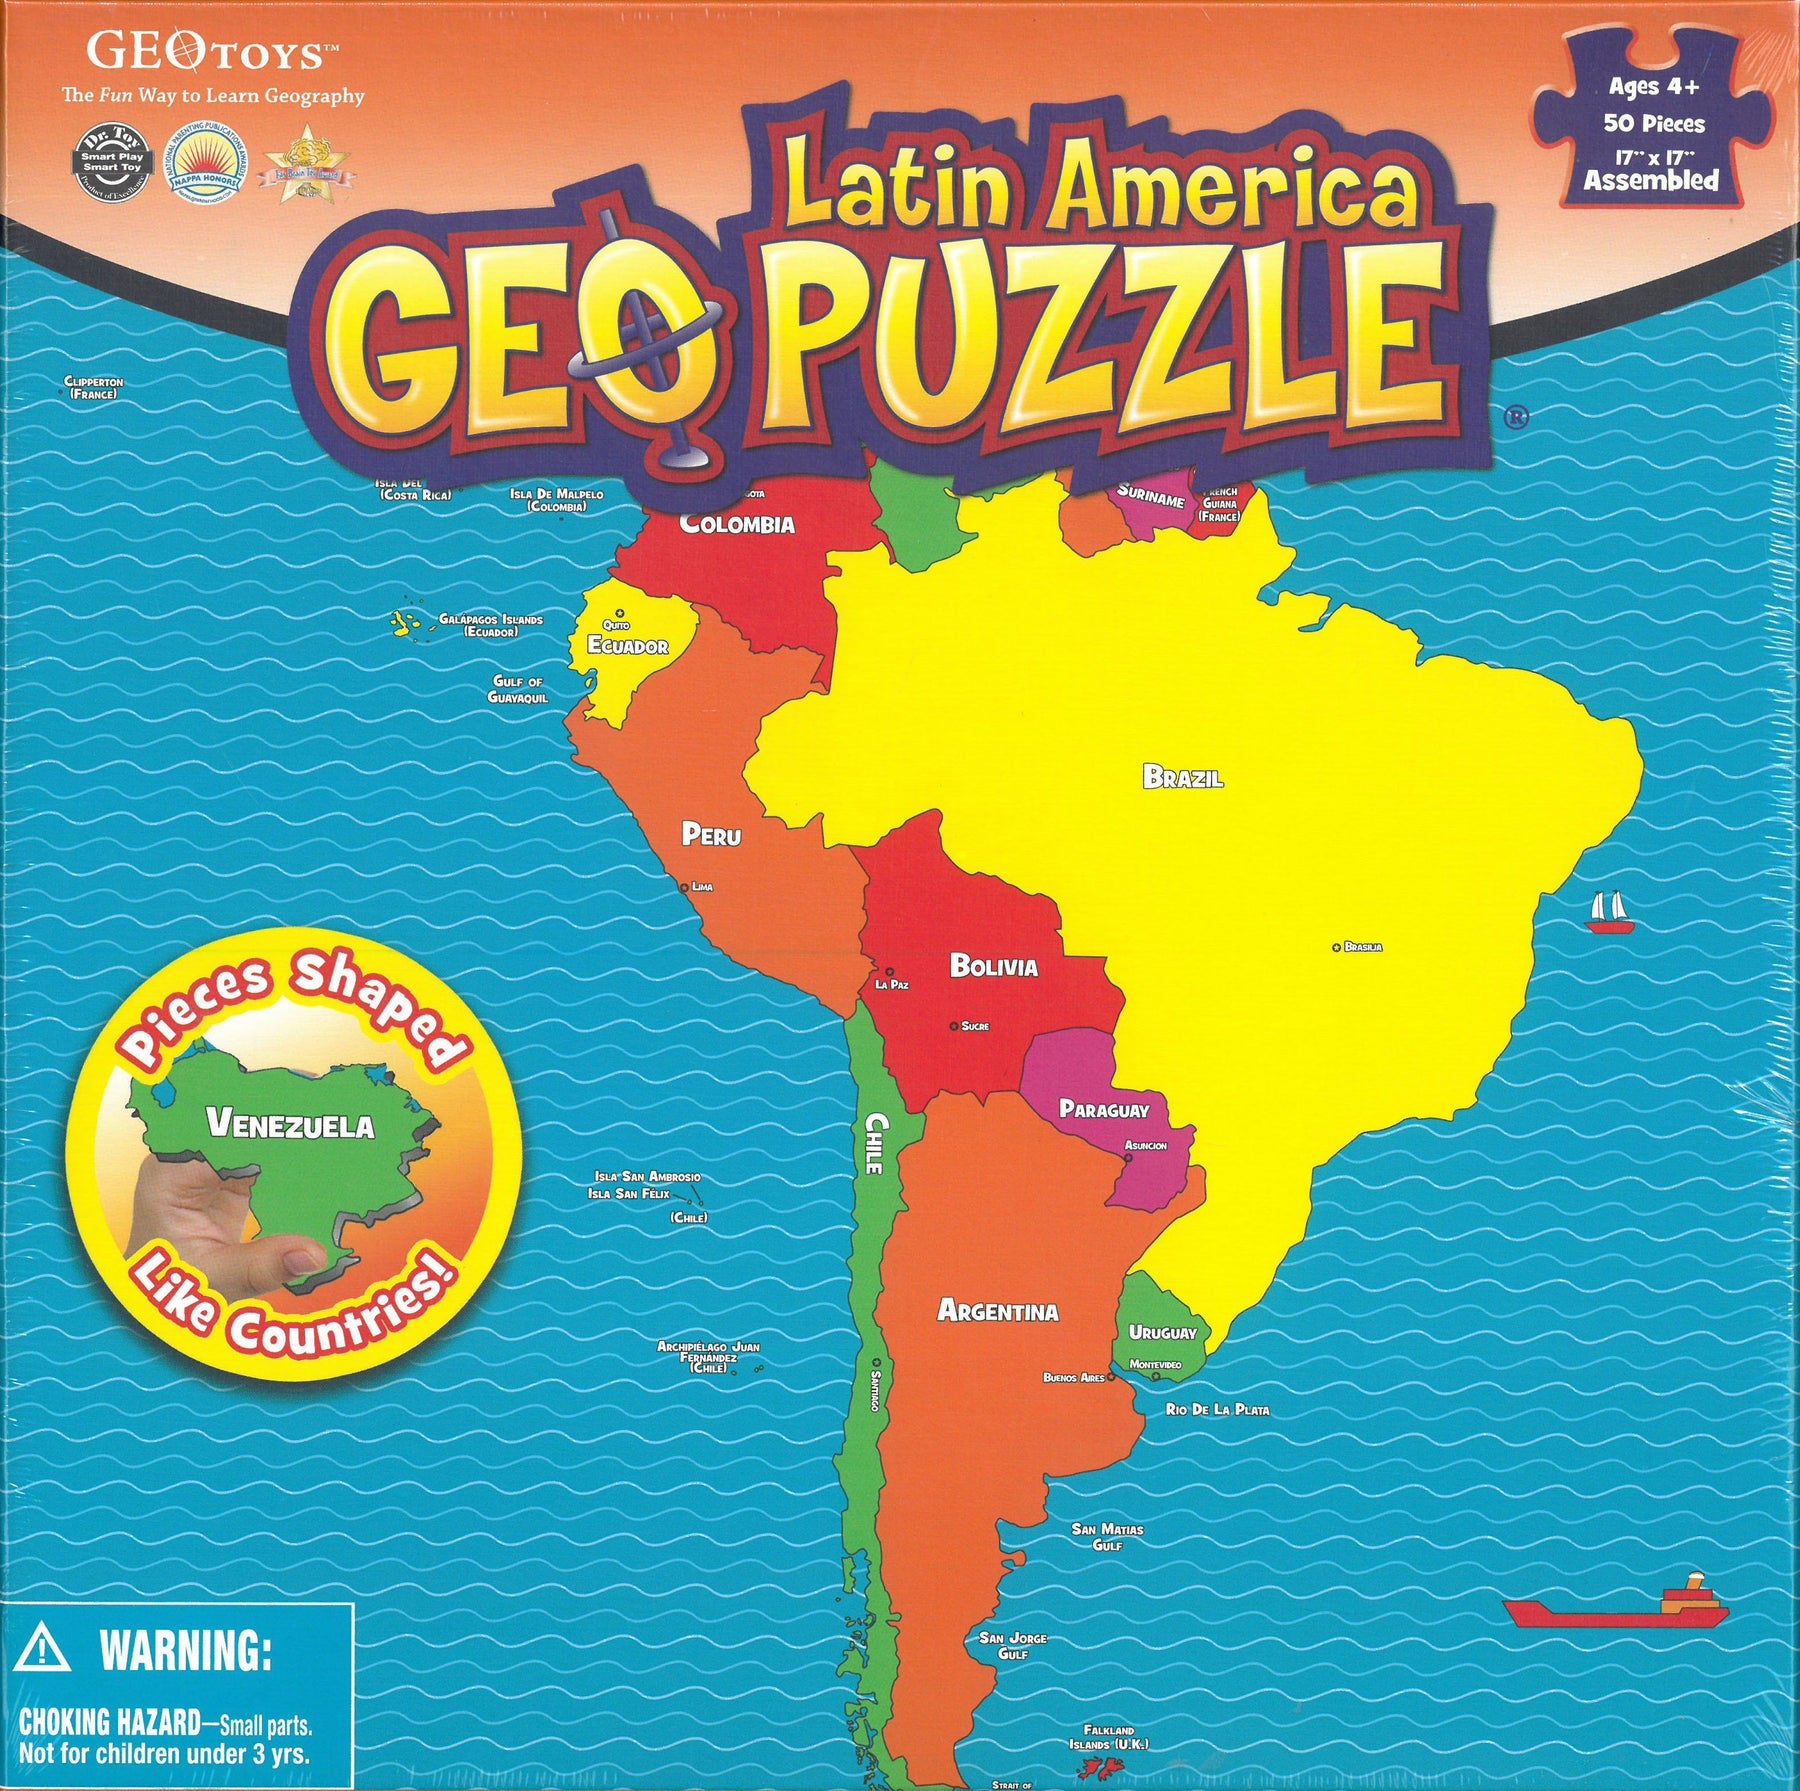 Puzzle magnétique de carte du monde pour enfants de 4 à 6 ans